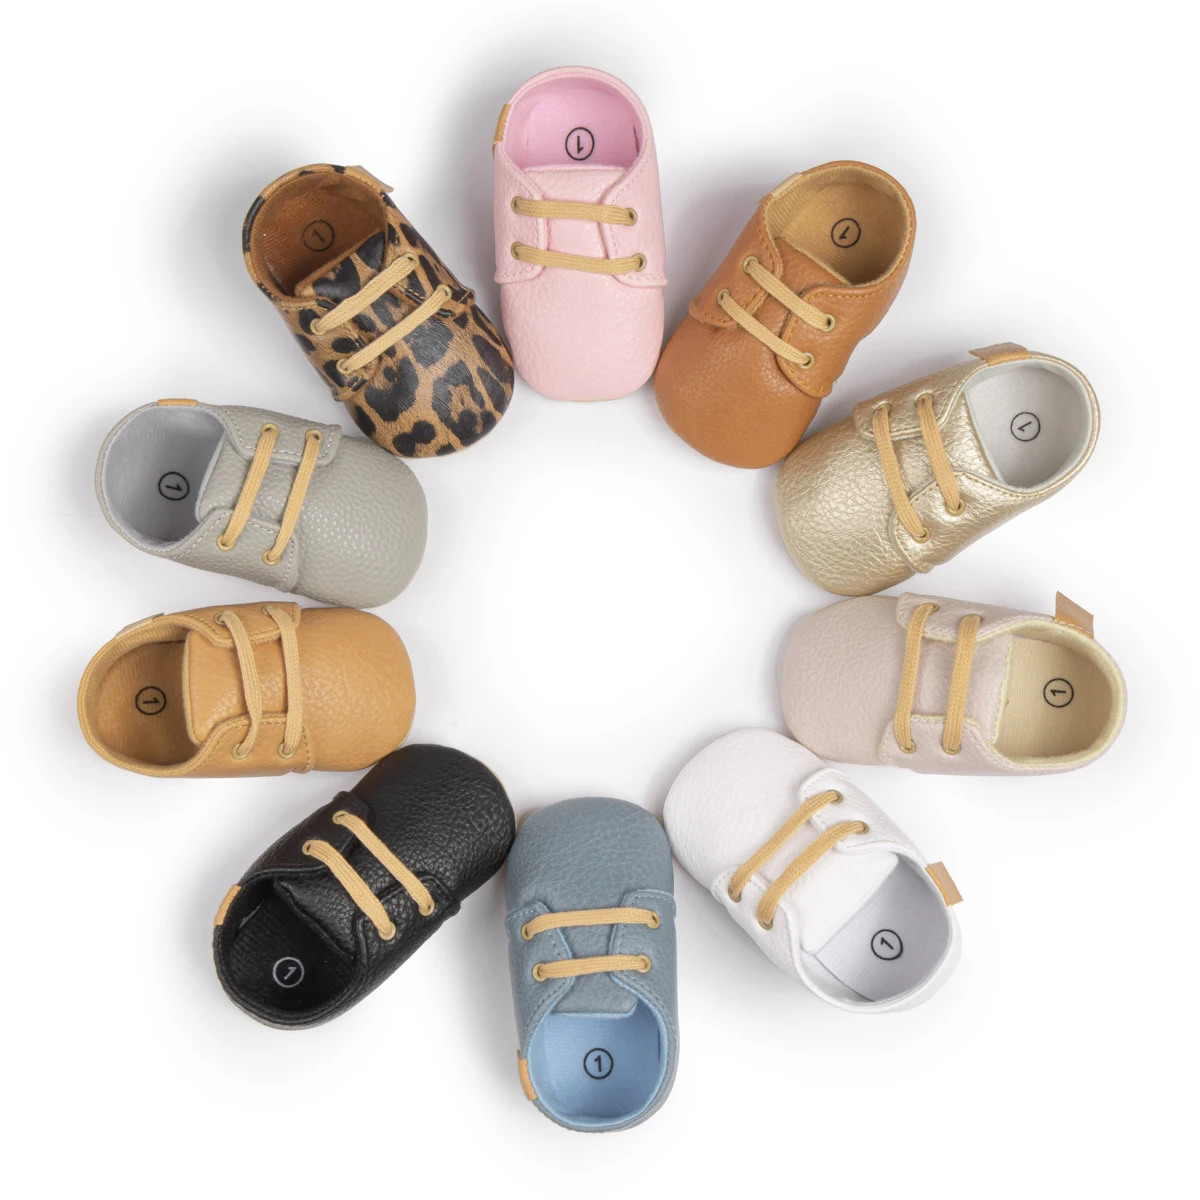 Designer Toddler Boy Shoes School Party Infant Newborn Prewalker Walking Baby Dress Shoes For Babies